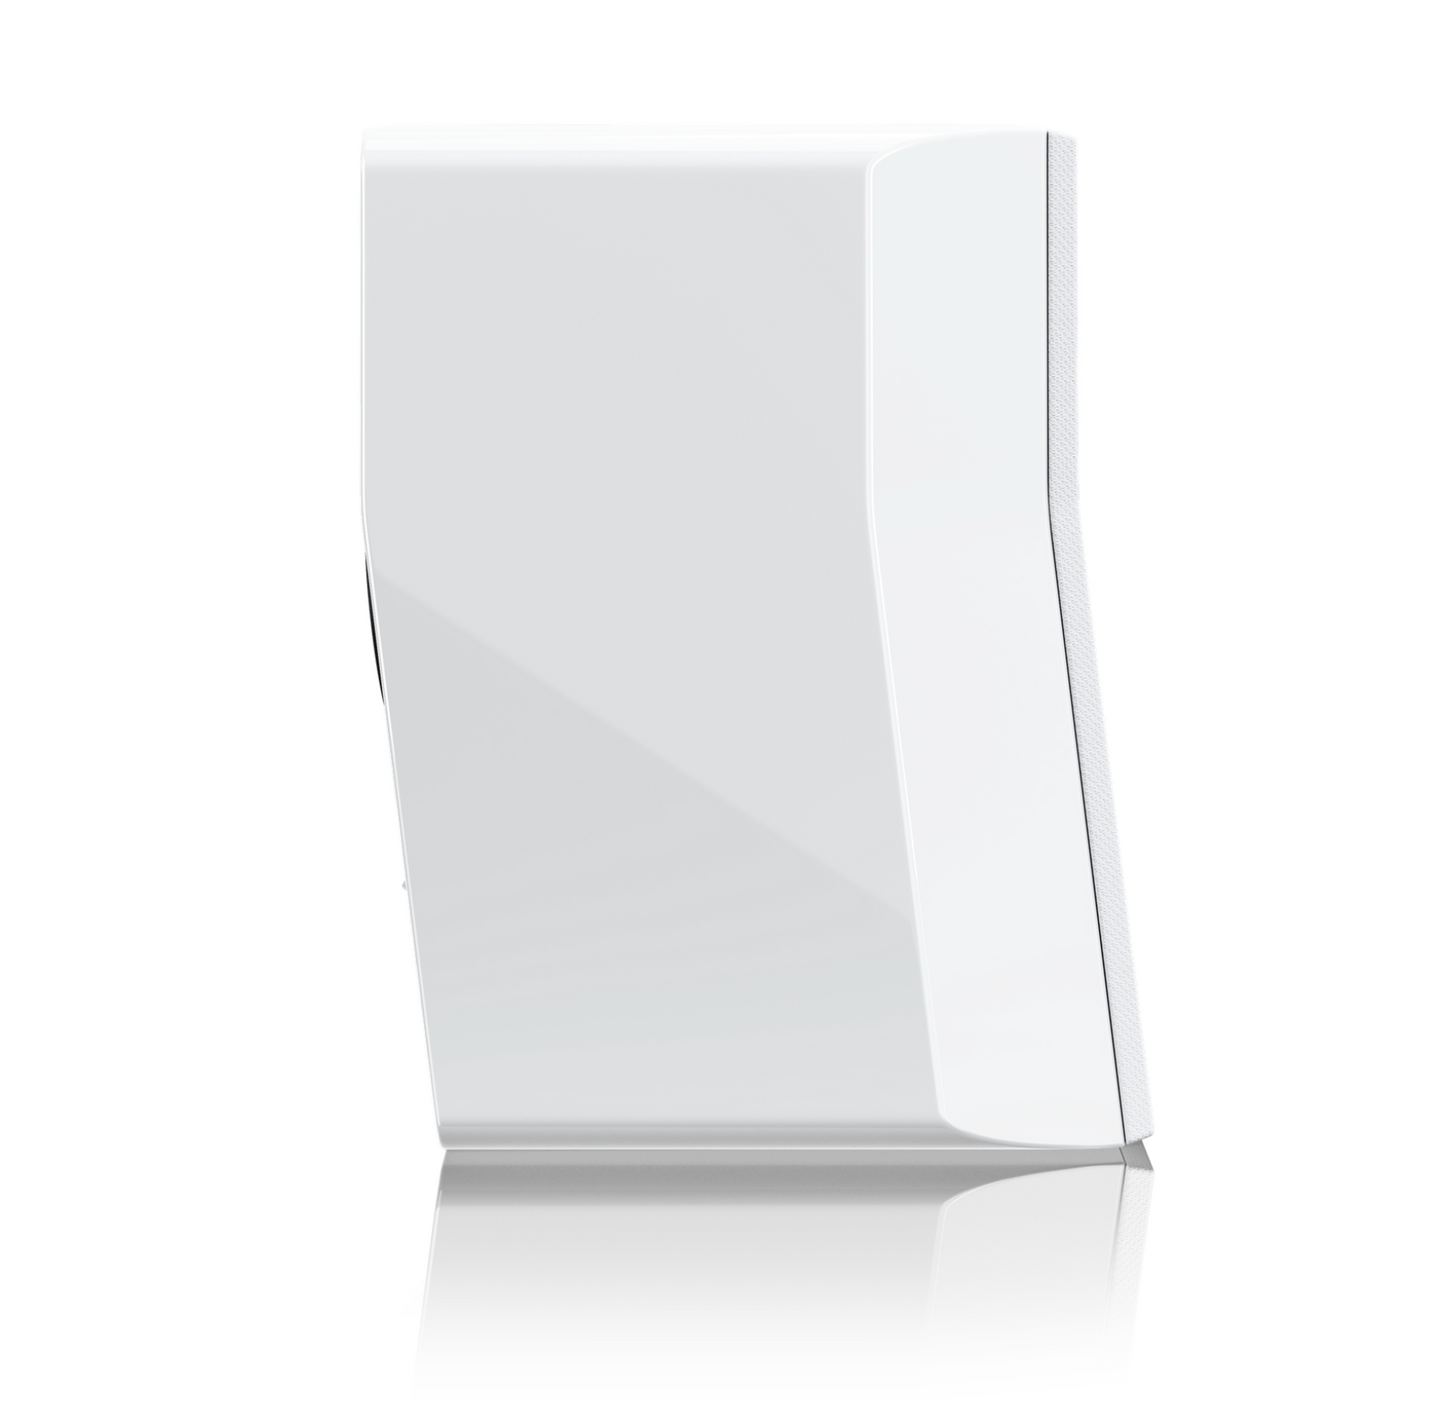 SVS Ultra Evolution Nano Bookshelf Speaker in Piano White Gloss, profile